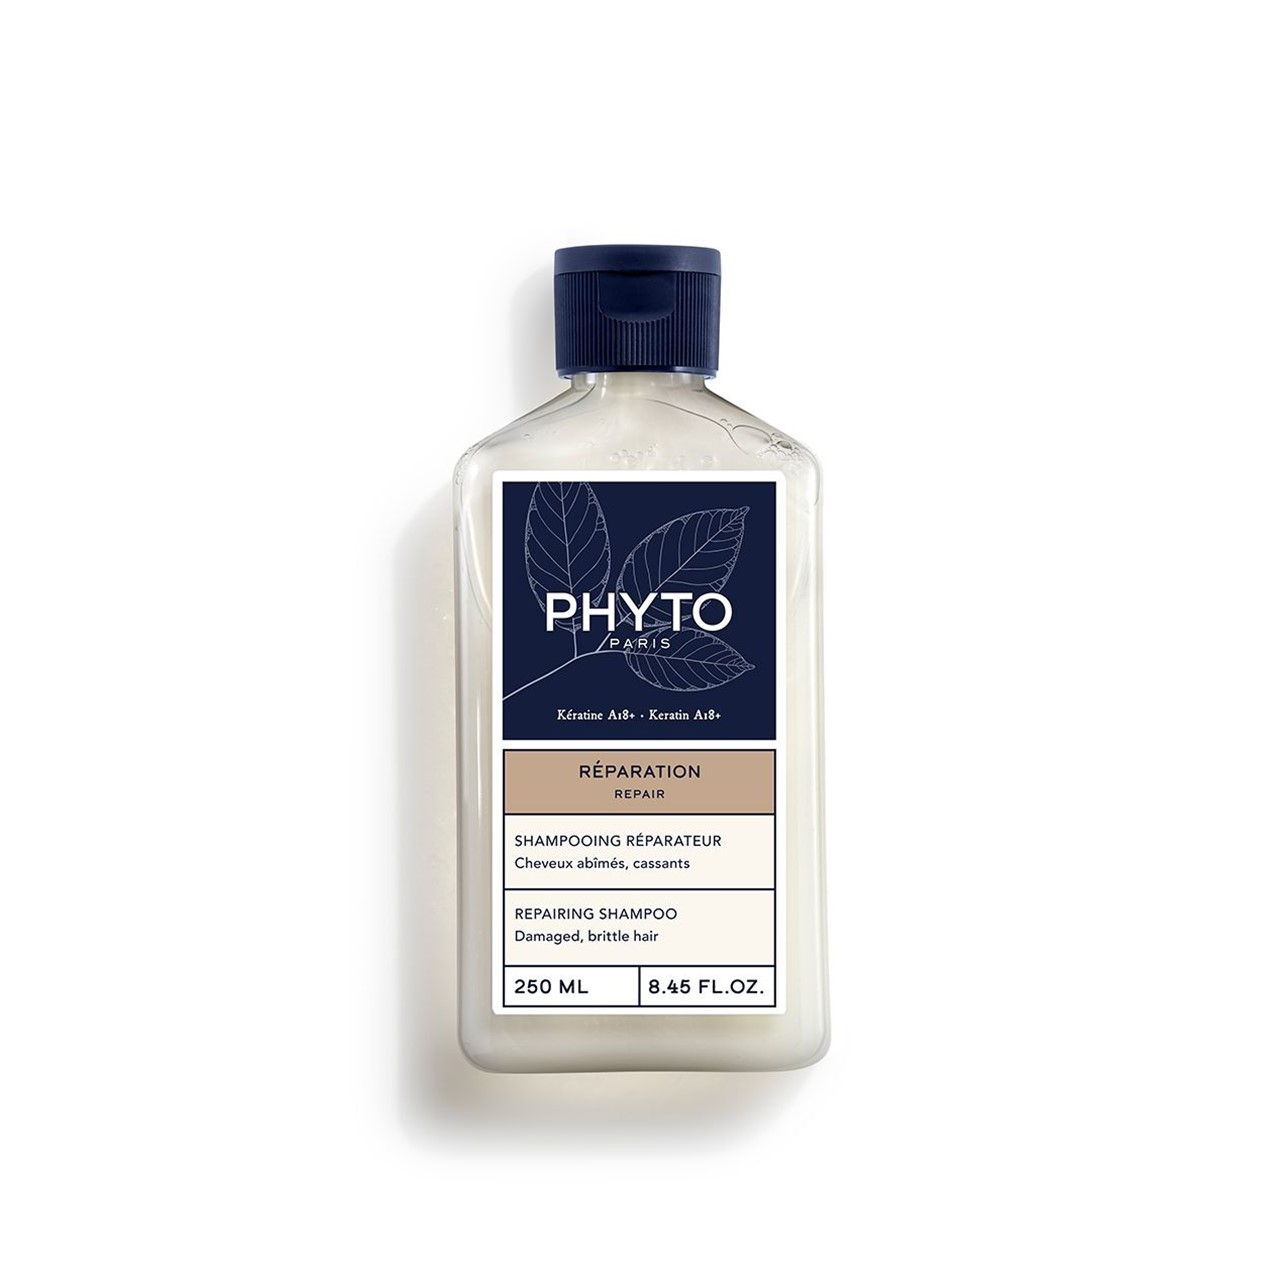 Phyto Repair Repairing Shampoo 250ml (8.45 fl oz)